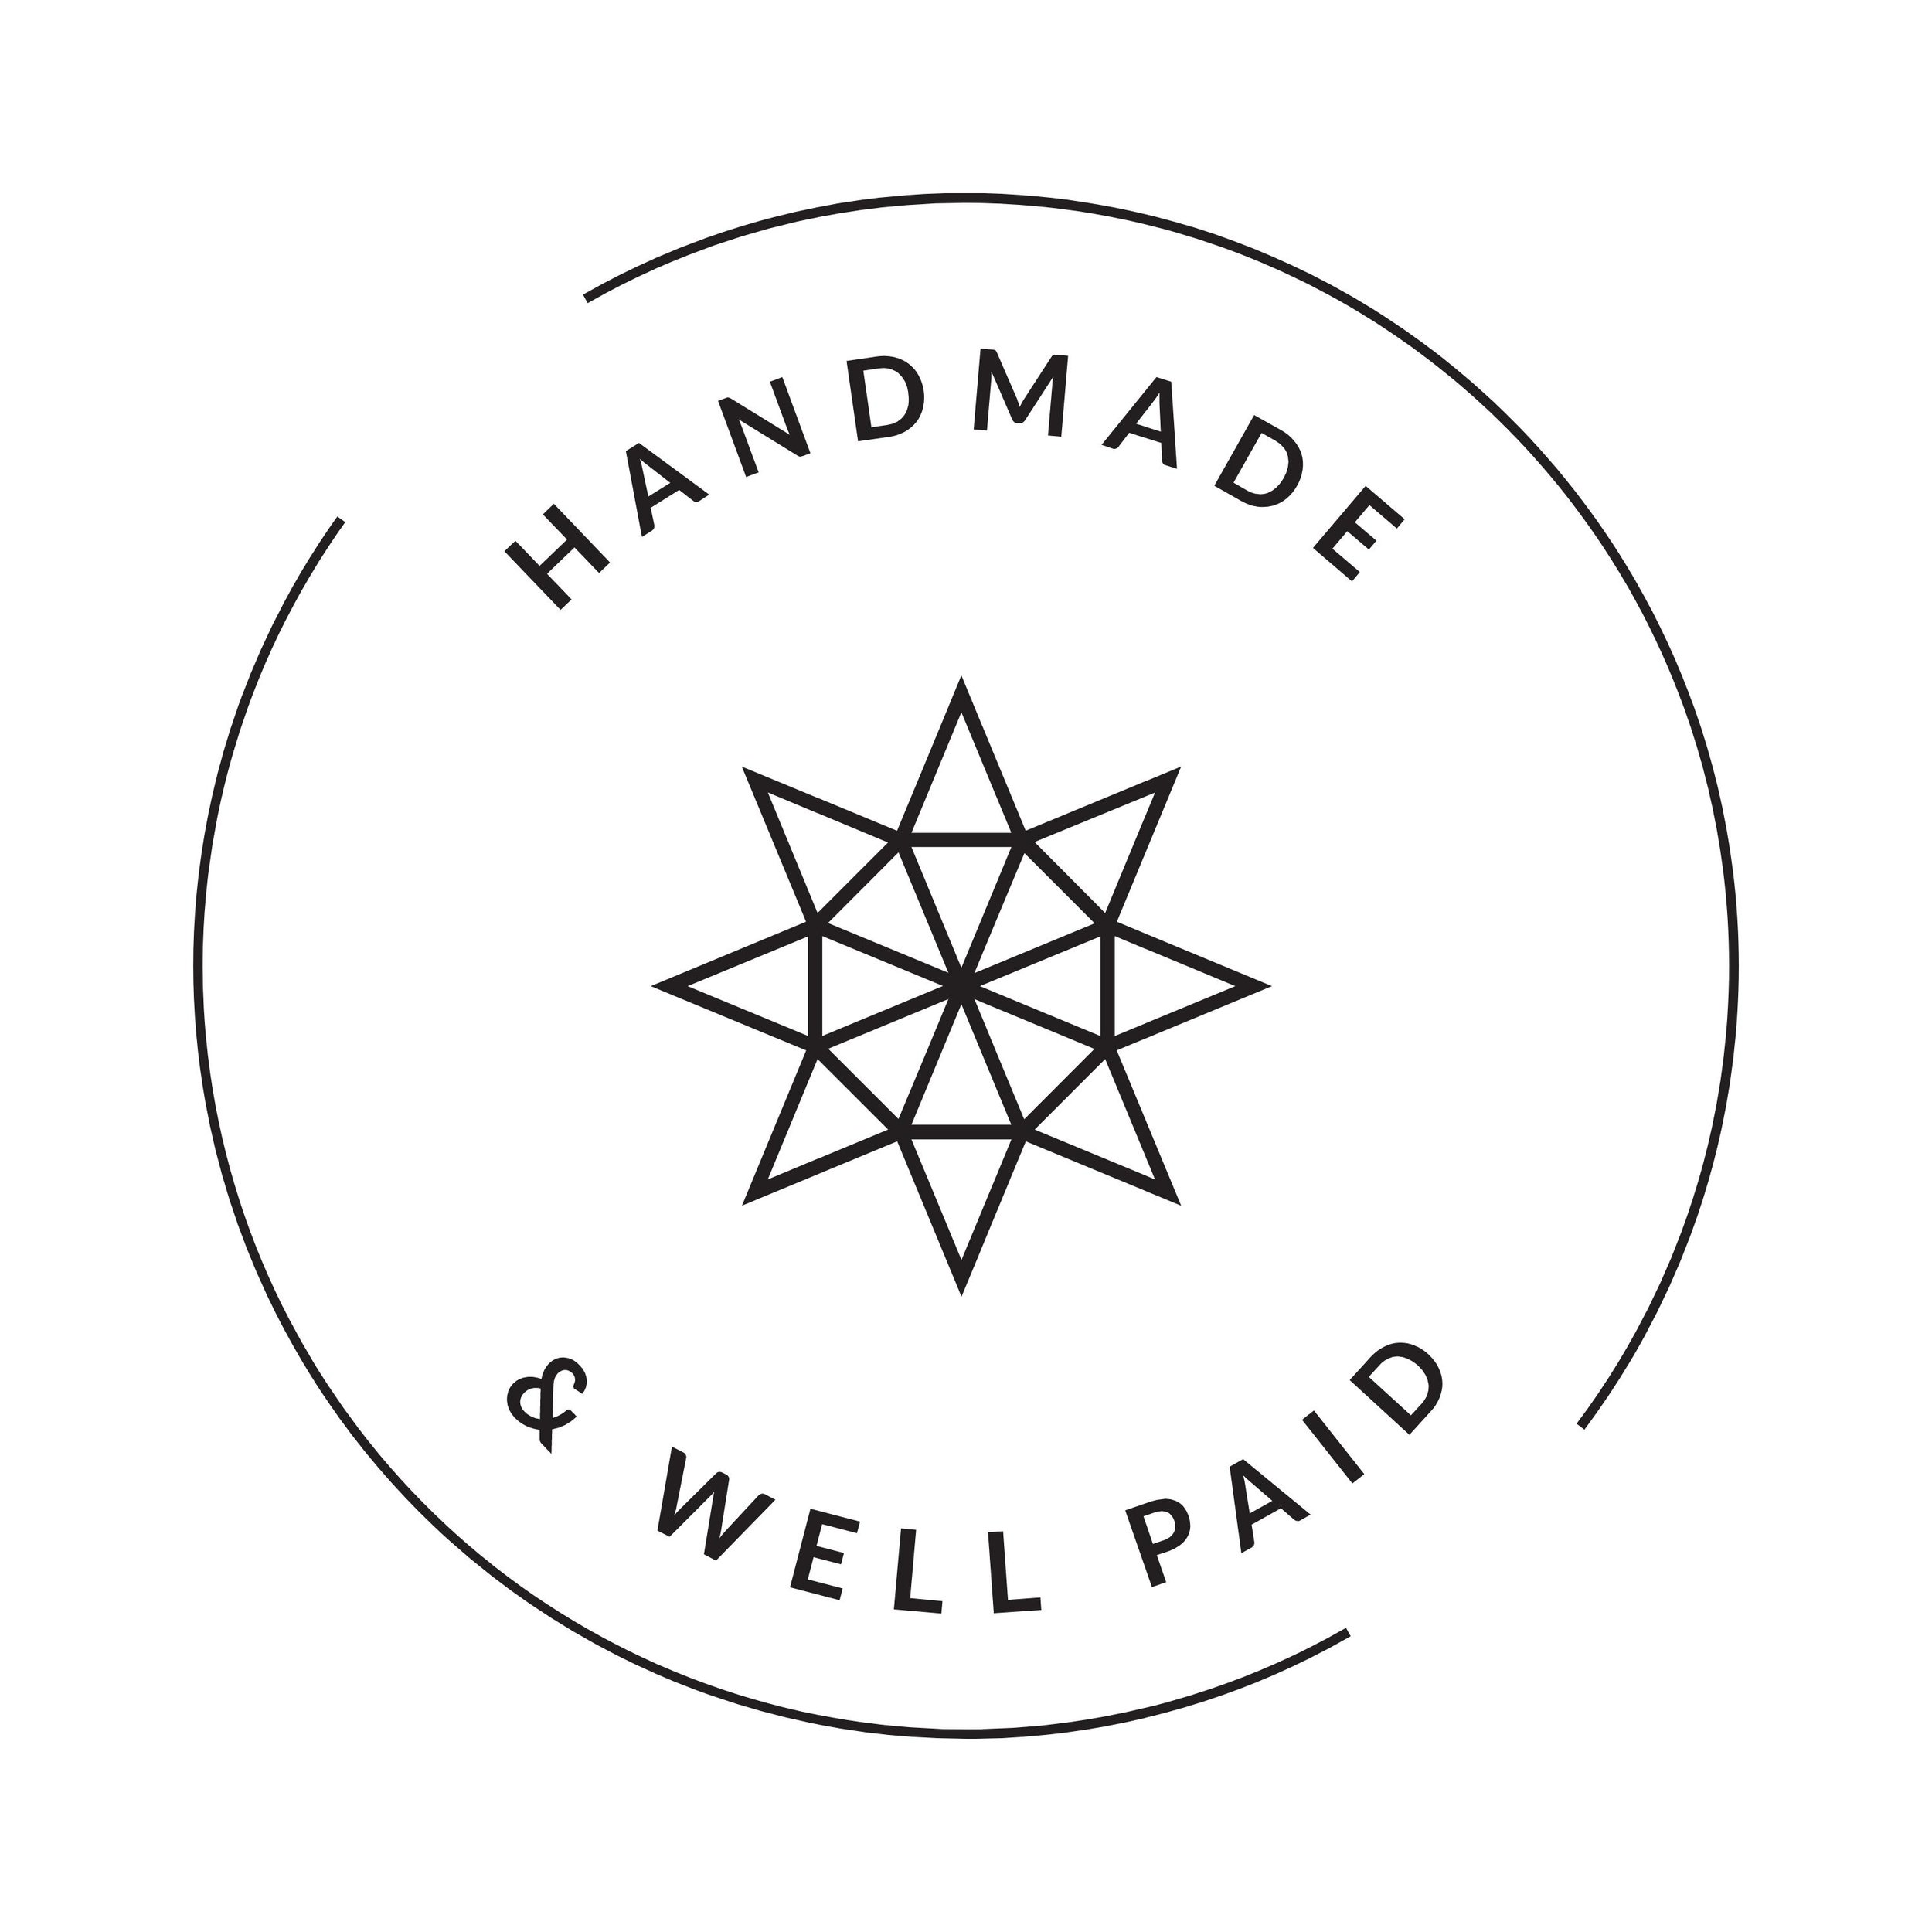 HandmadeWellPaid8.jpg